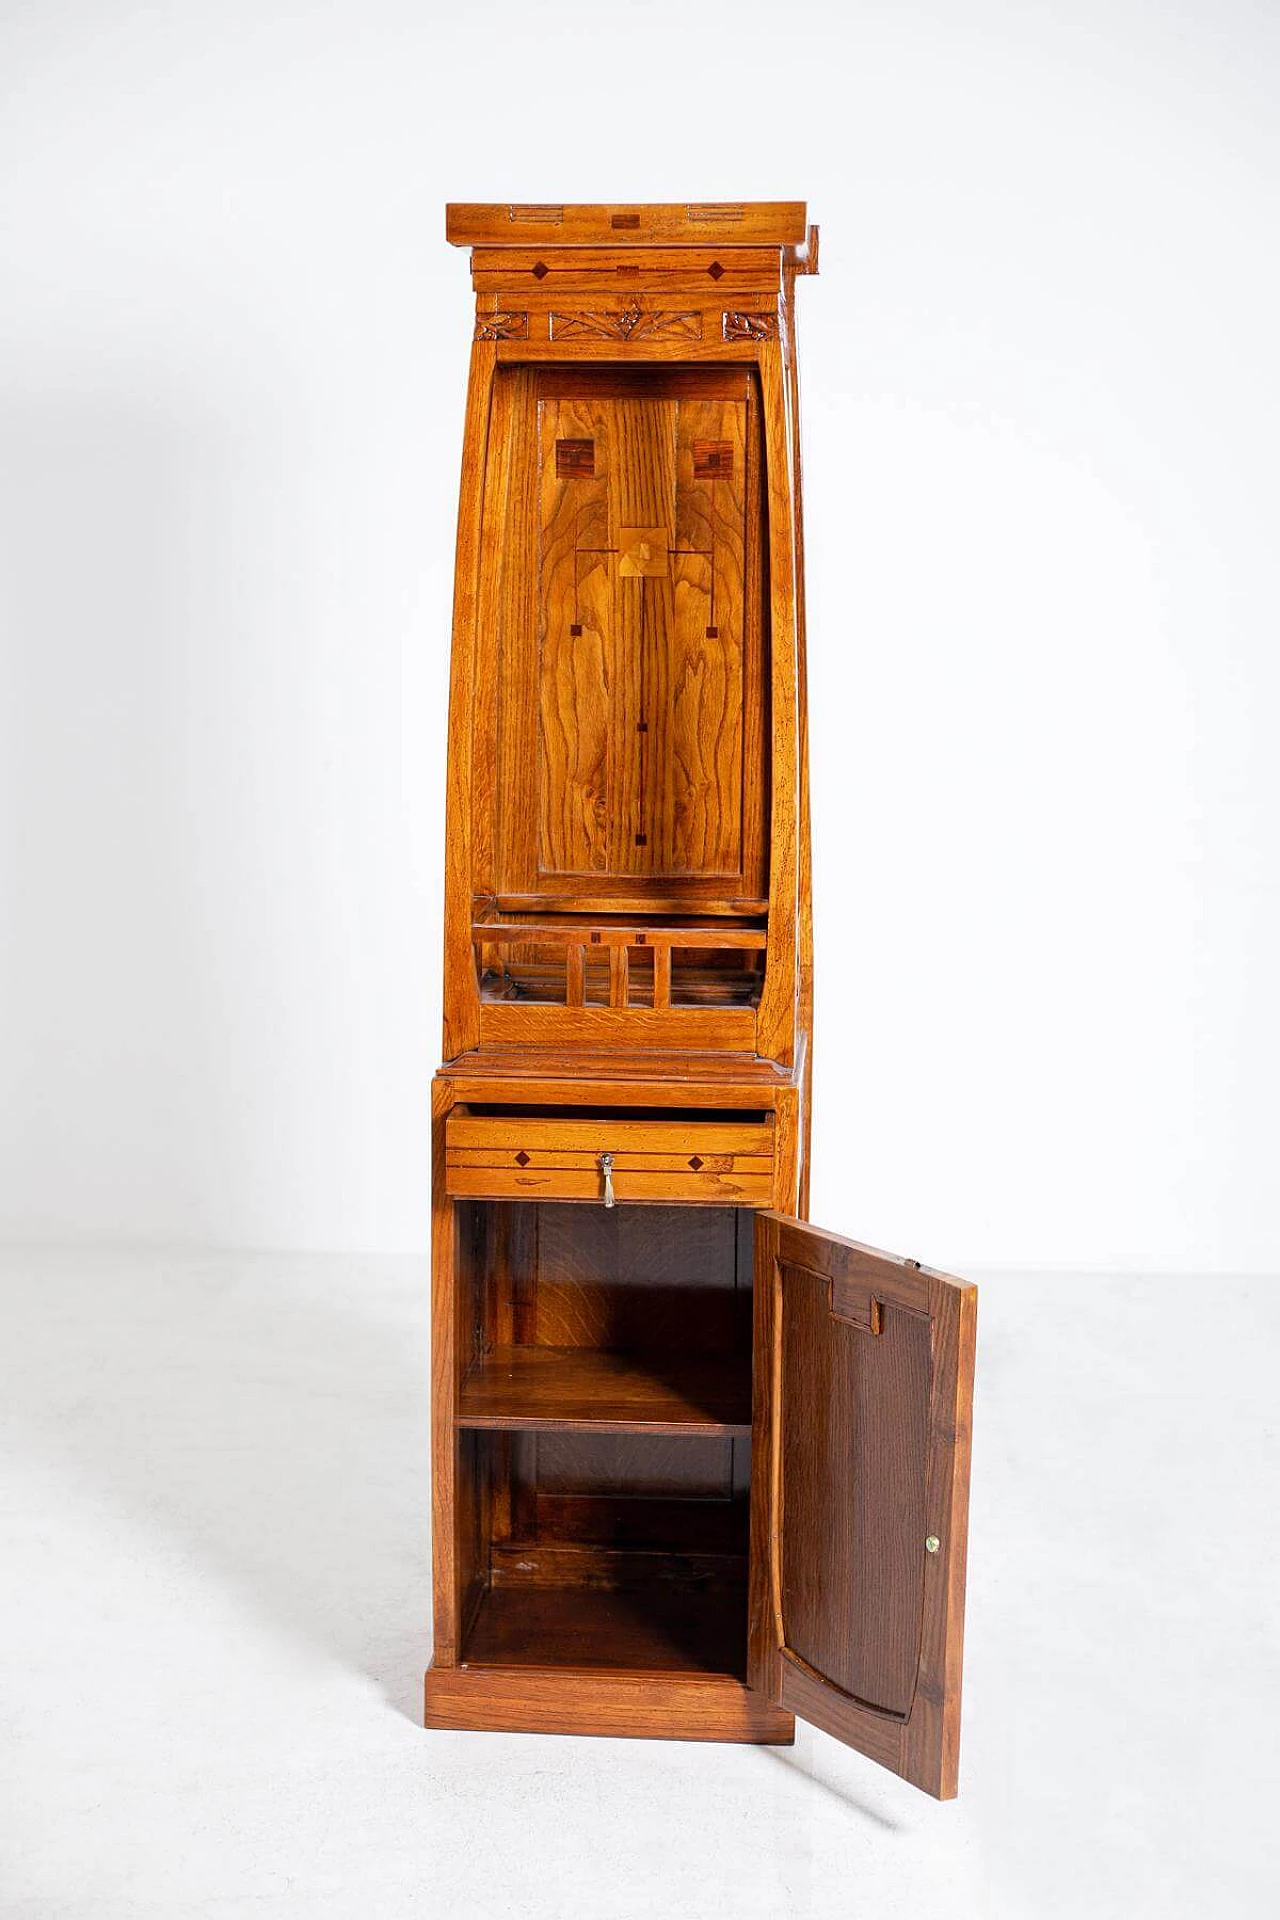 Mobile armadio in legno intagliato in stile Art Nouveau, del '900 1403433